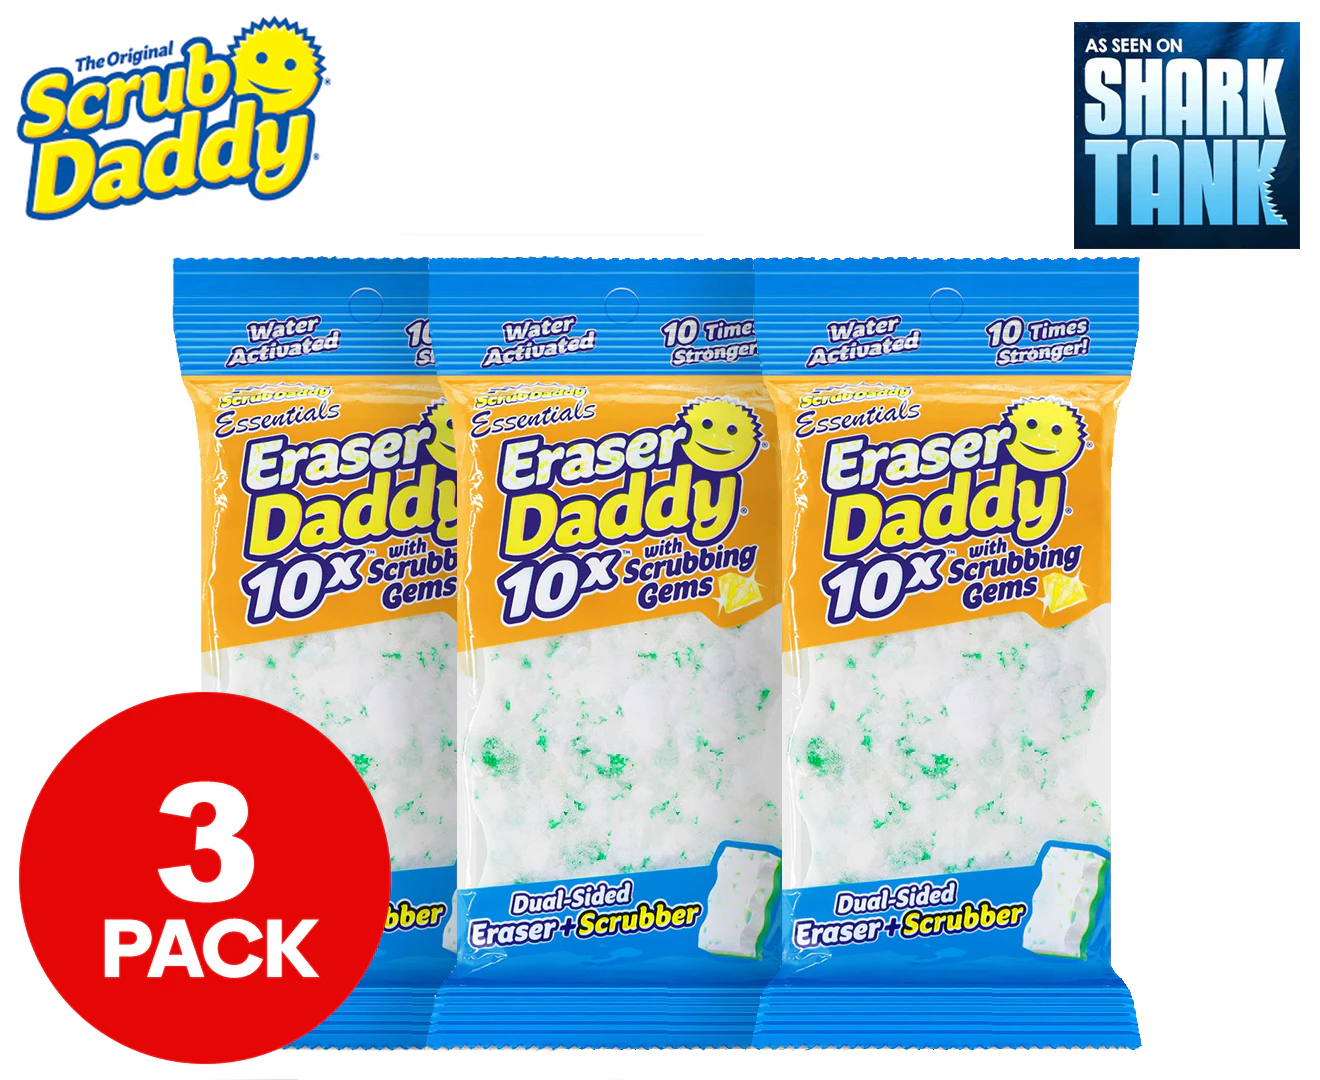 Eraser Daddy 10x with Scrubbing Gems (2ct)